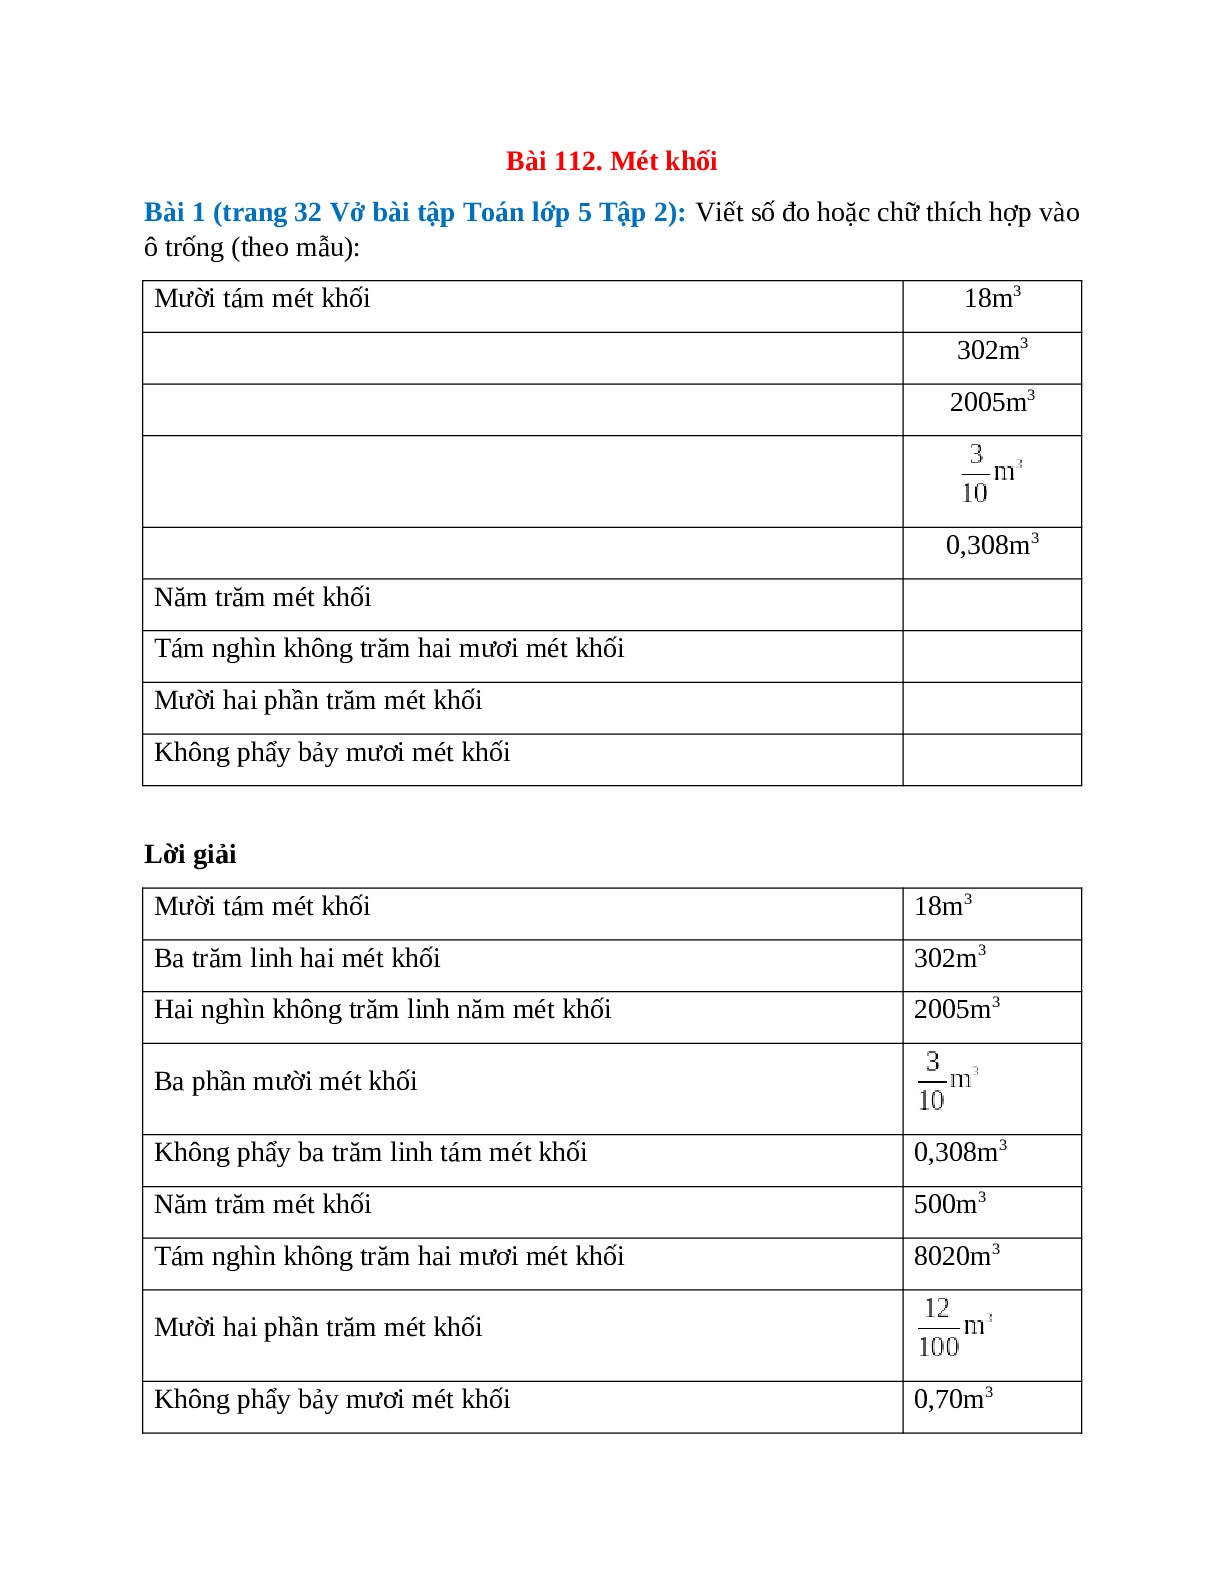 Viết số đo hoặc chữ thích hợp vào ô trống Bài 1 trang 32 Vở bài tập Toán lớp 5 (trang 1)